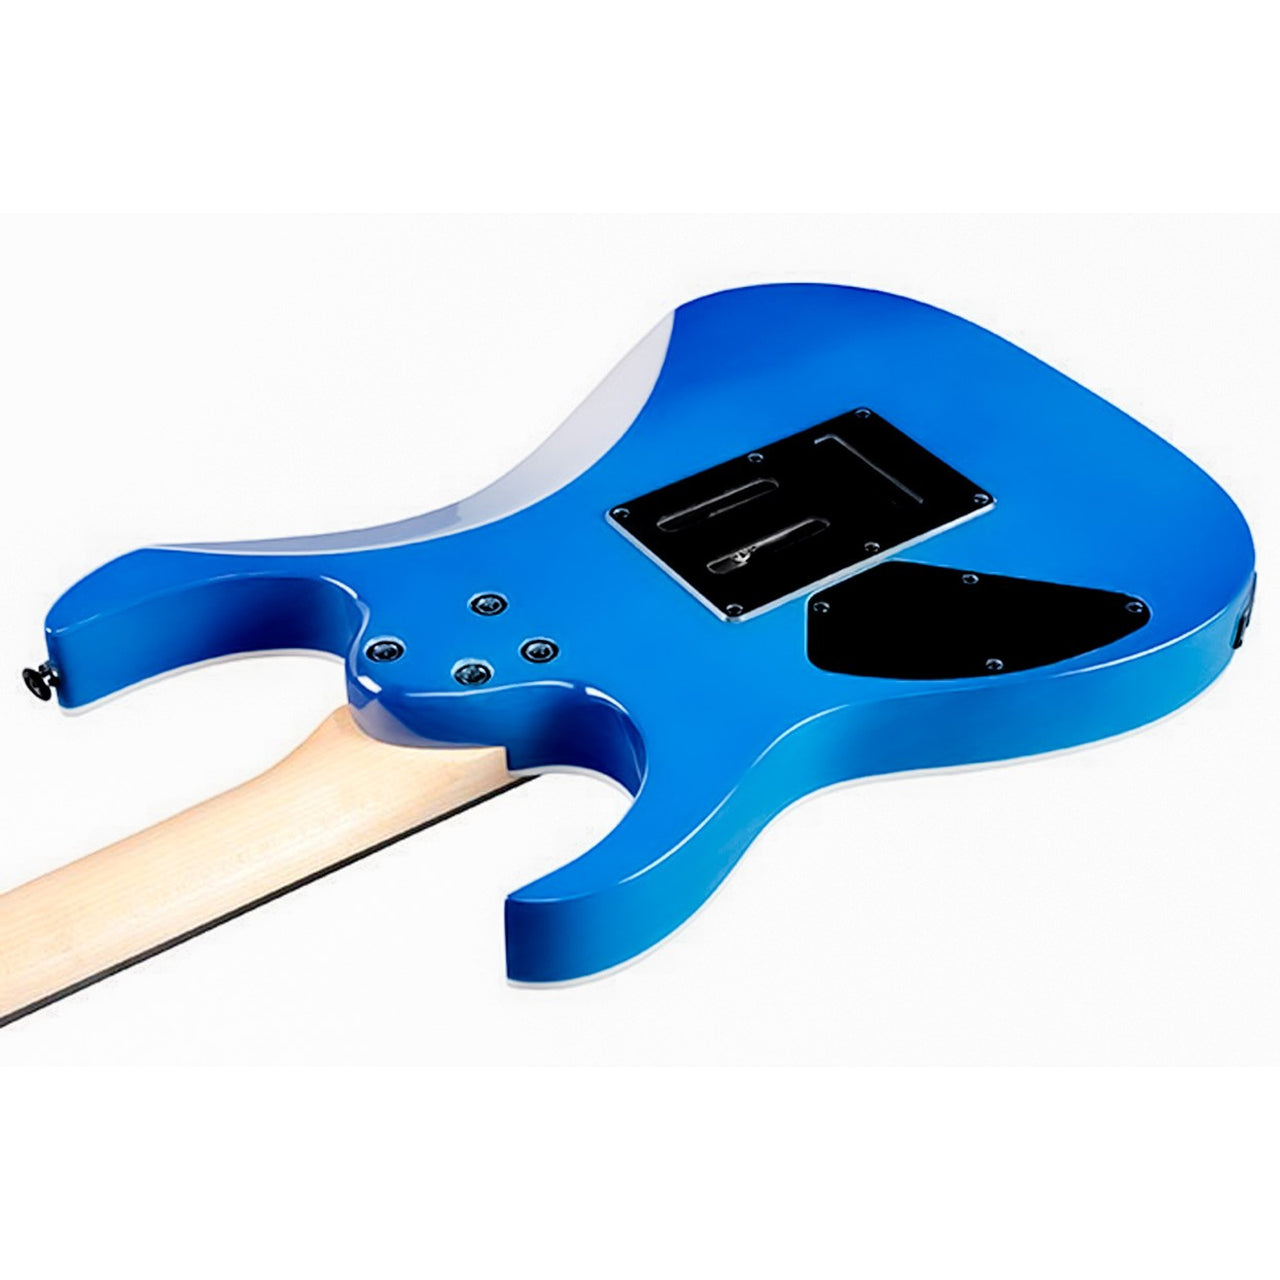 Guitarra Electrica Ibanez Grg120qasp-bgd Serie Gio Rg Azul Blue Gradation